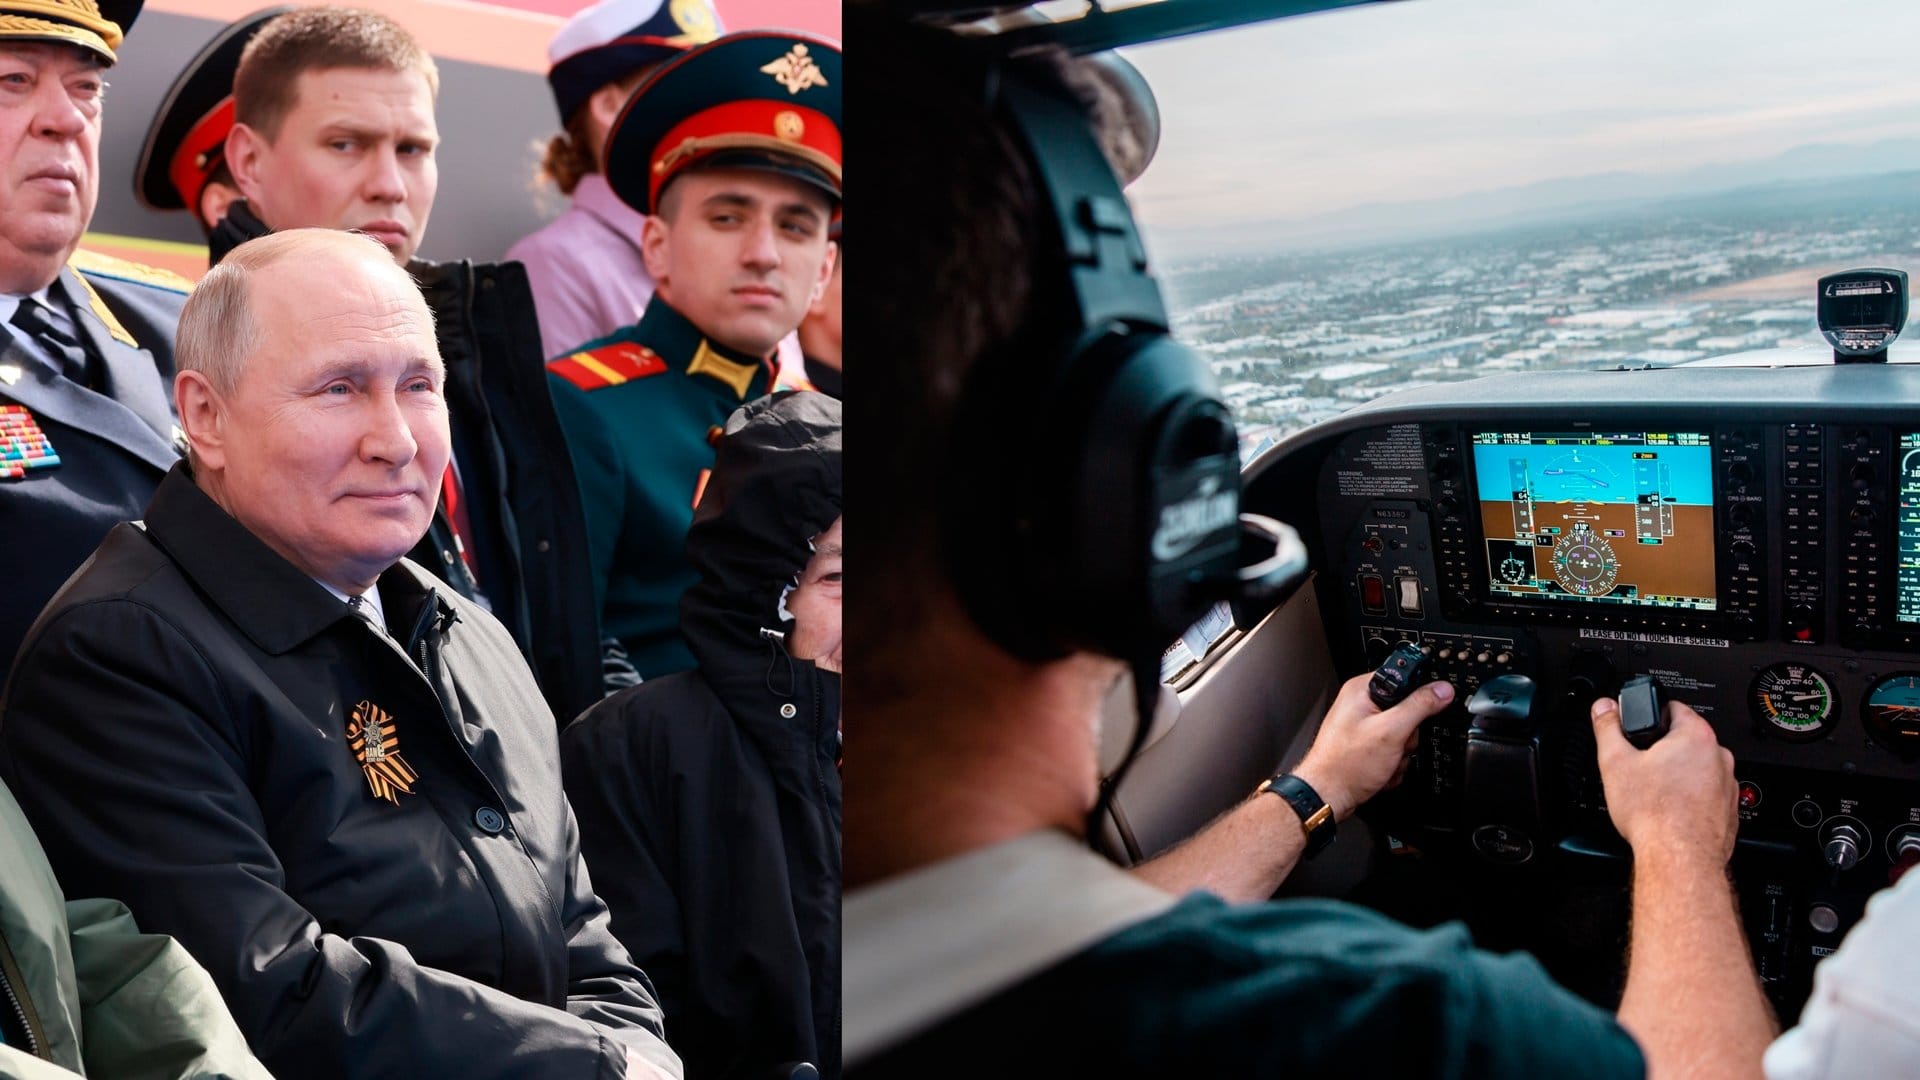 Polski pilot podczas lotu zostawił światu jasną wiadomość